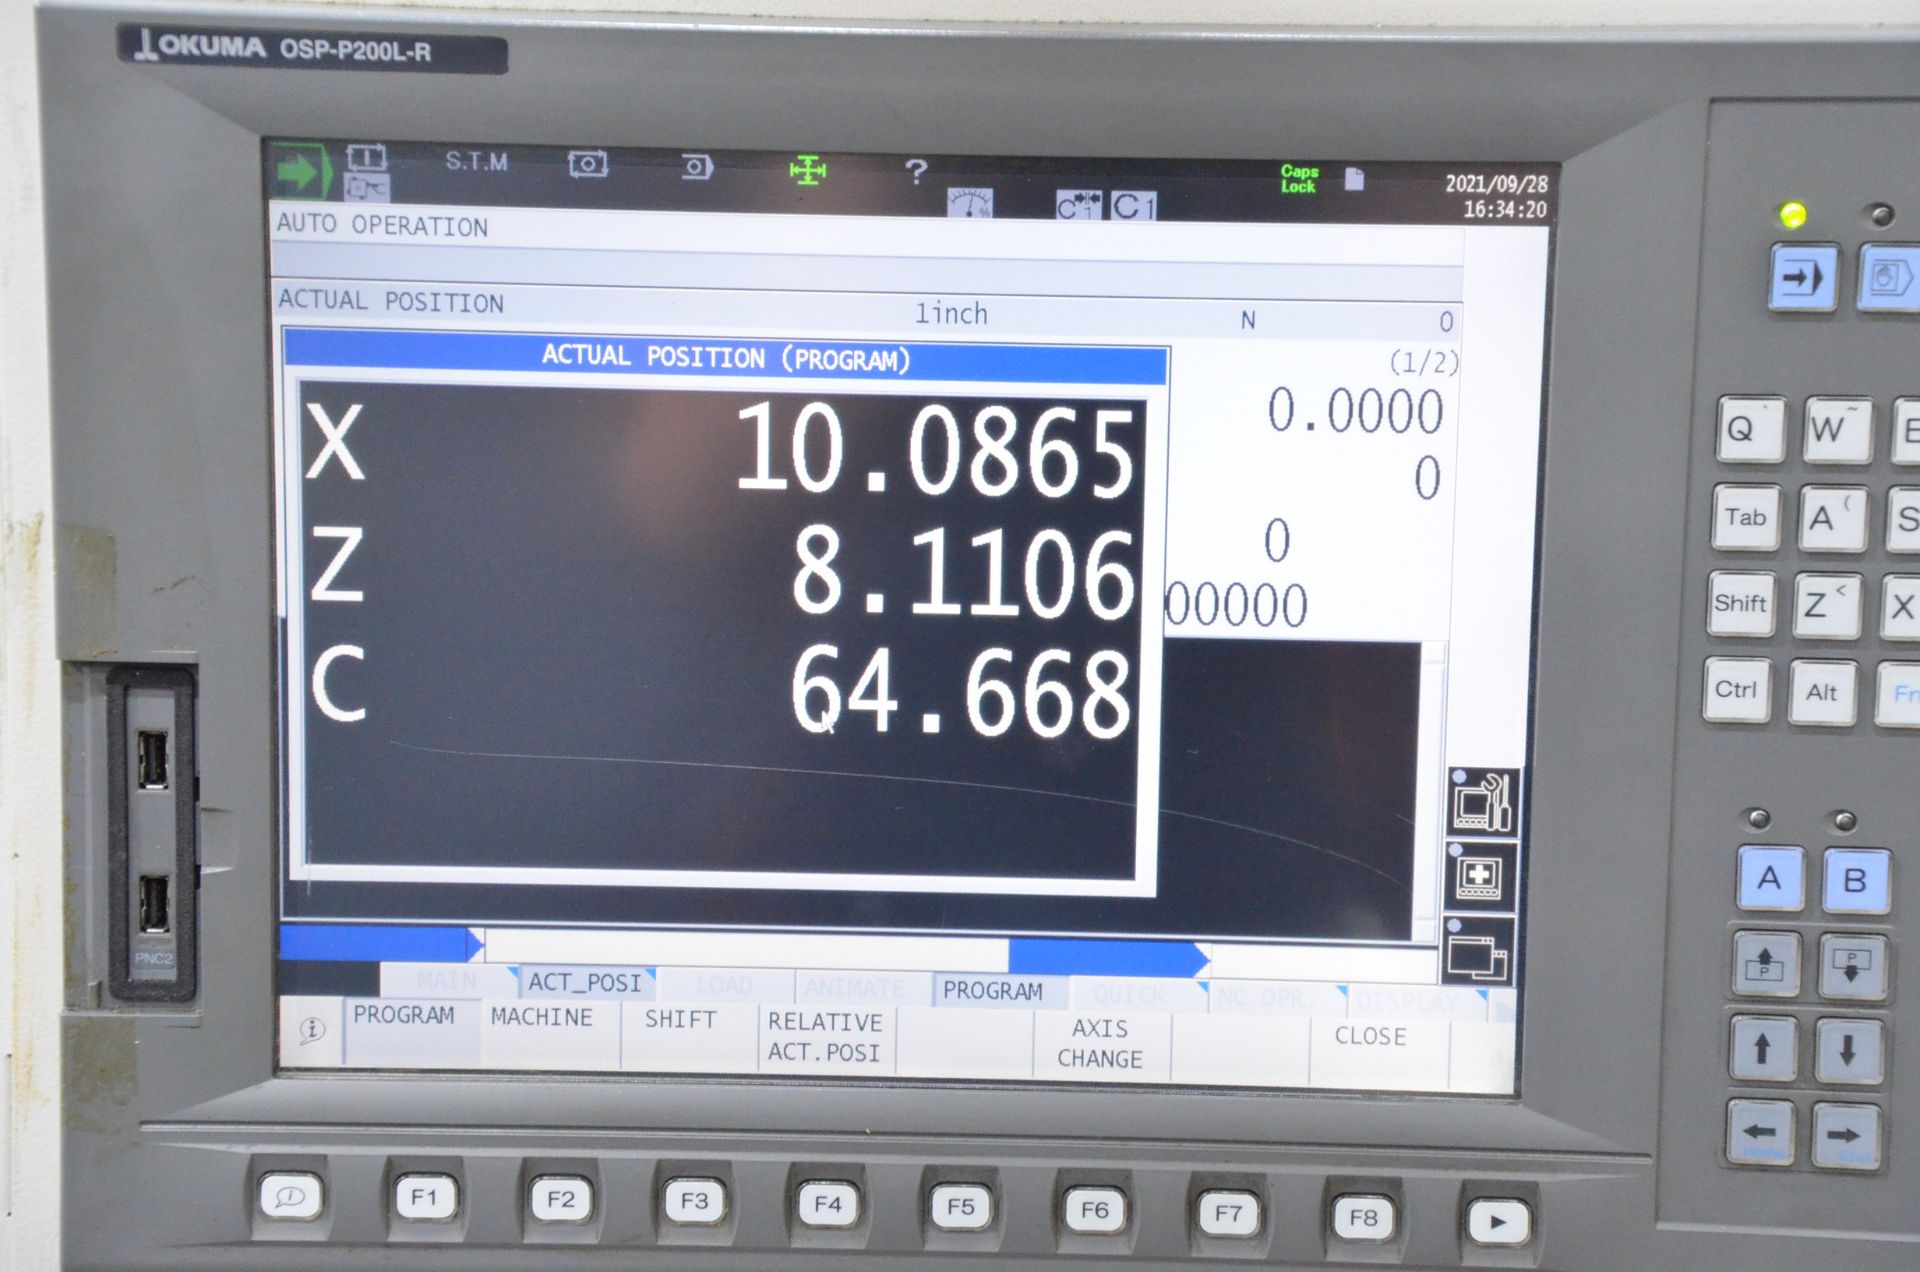 OKUMA (2011) GENOS L200E-M CNC LIVE MILLING AND TURNING CENTER WITH OKUMA OSP-P200L-R CNC CONTROL, - Image 9 of 14